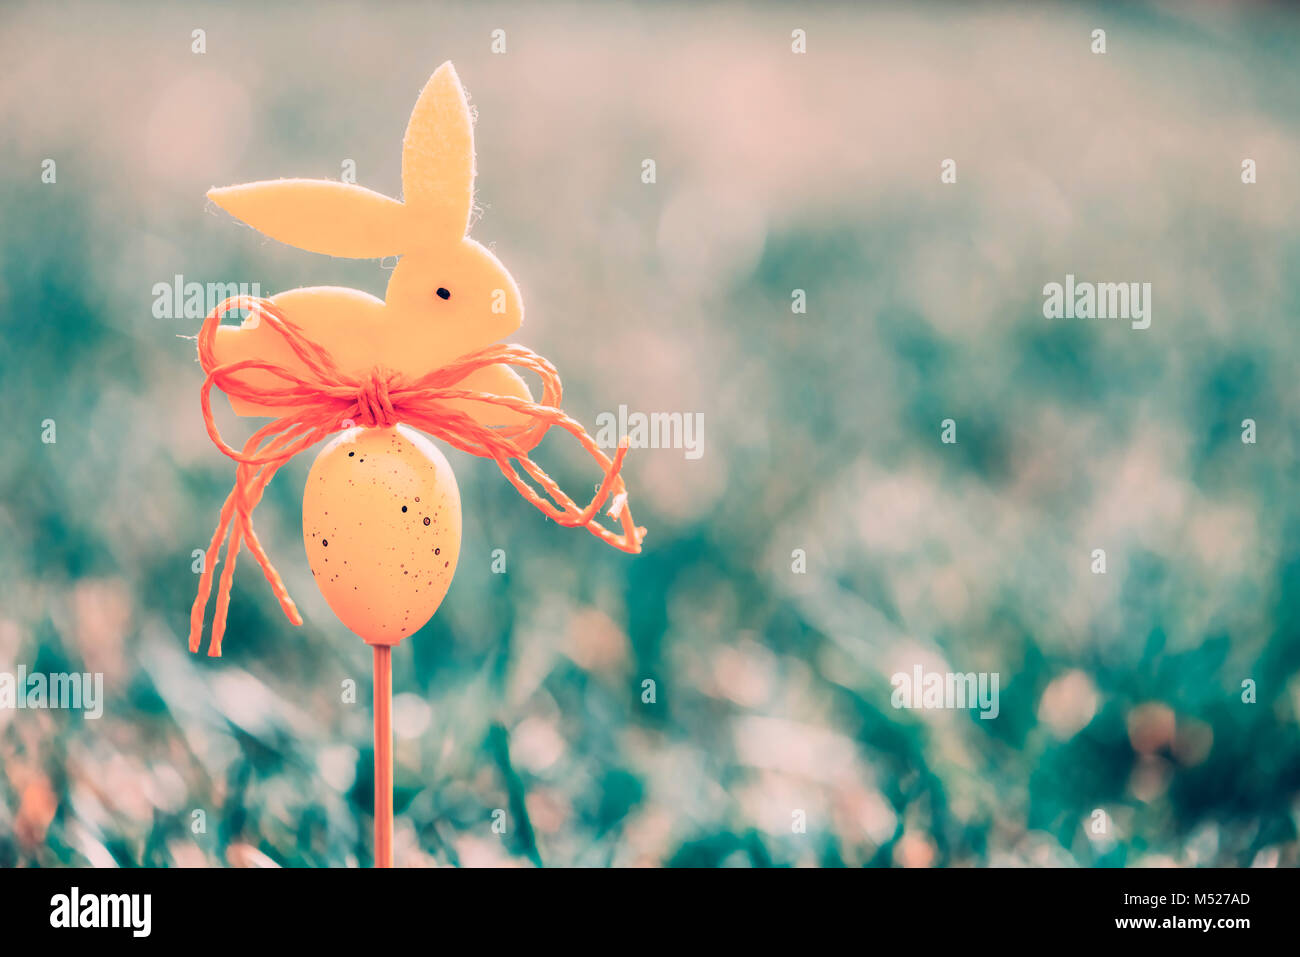 Ostern Hintergrund Konzept mit gelben bunny Abbildung Stockfoto